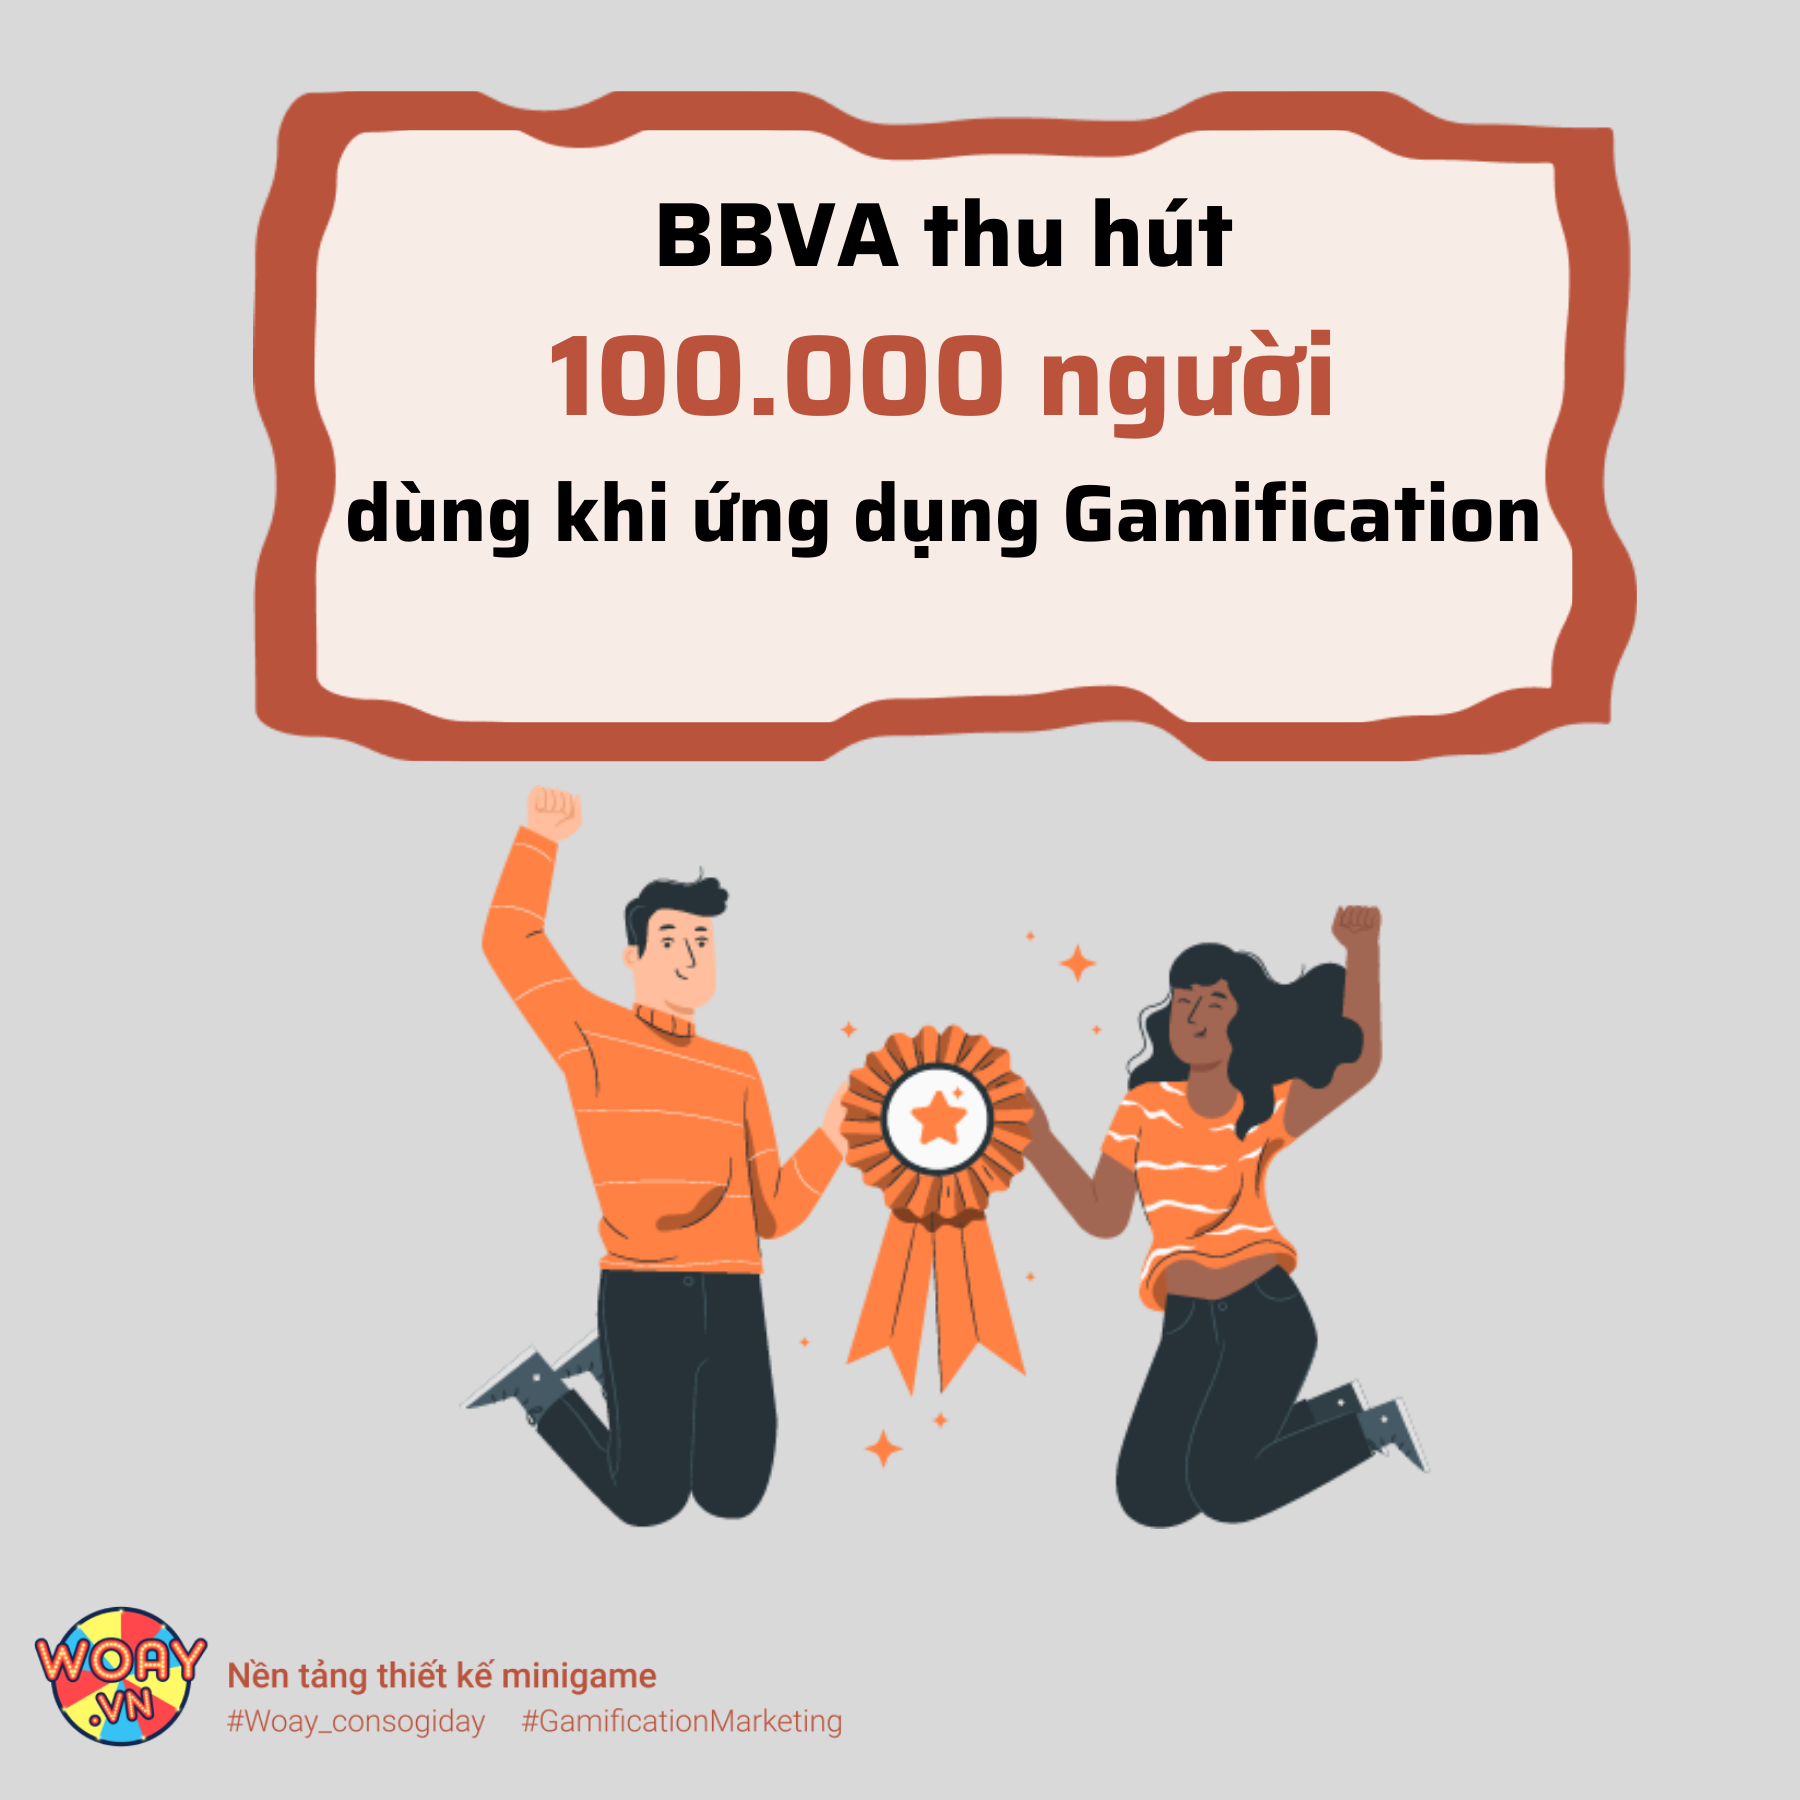 BBVA thu hút 100.000 người dùng khi ứng dụng Gamification